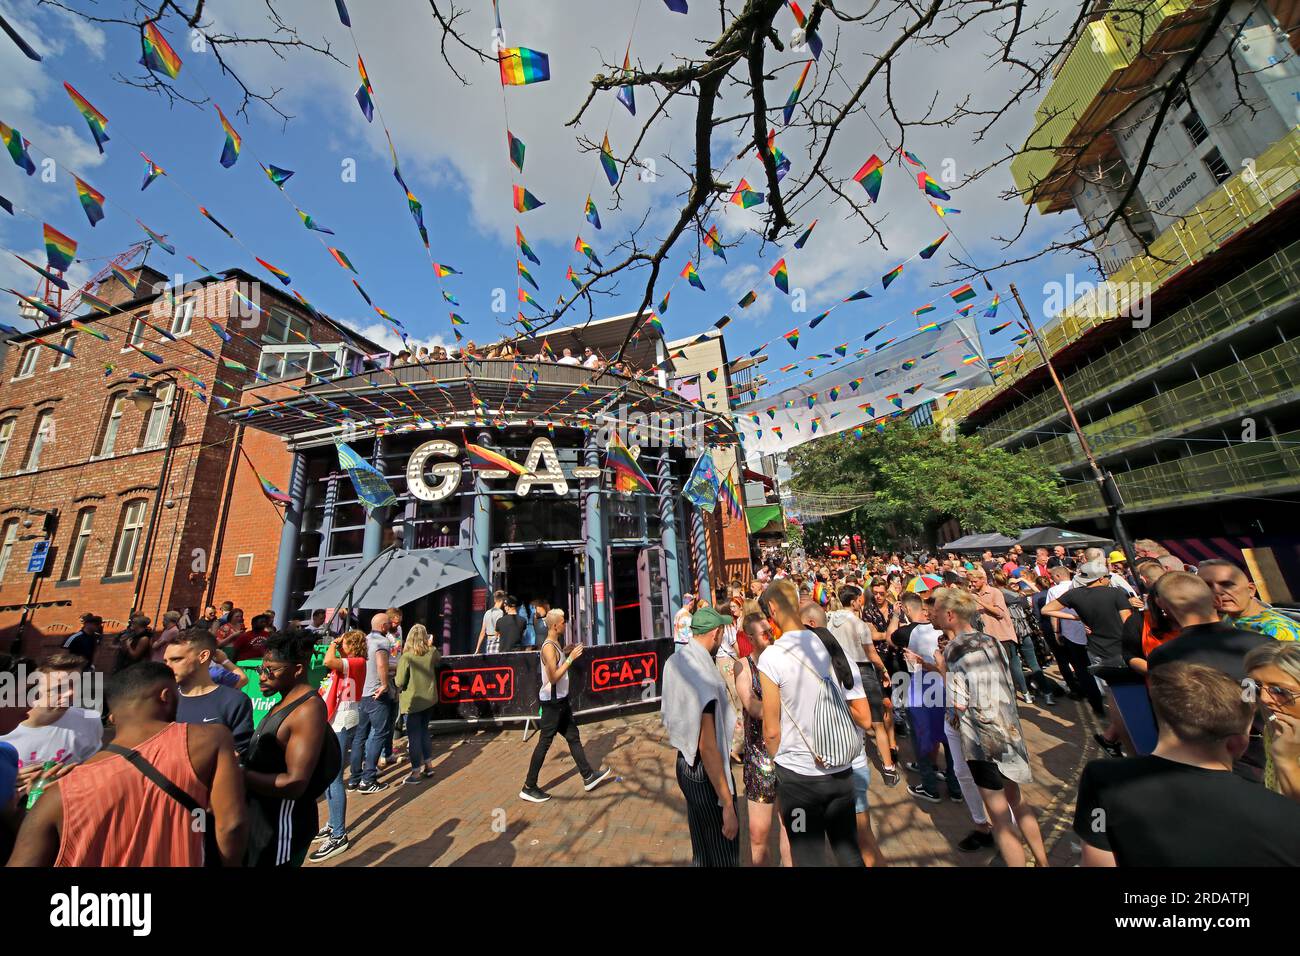 The gay Bar appréciant Manchester Pride Festival, vacances bancaires au mois d'août au gay Village, Canal St, Manchester, Angleterre, Royaume-Uni, M1 6JB Banque D'Images